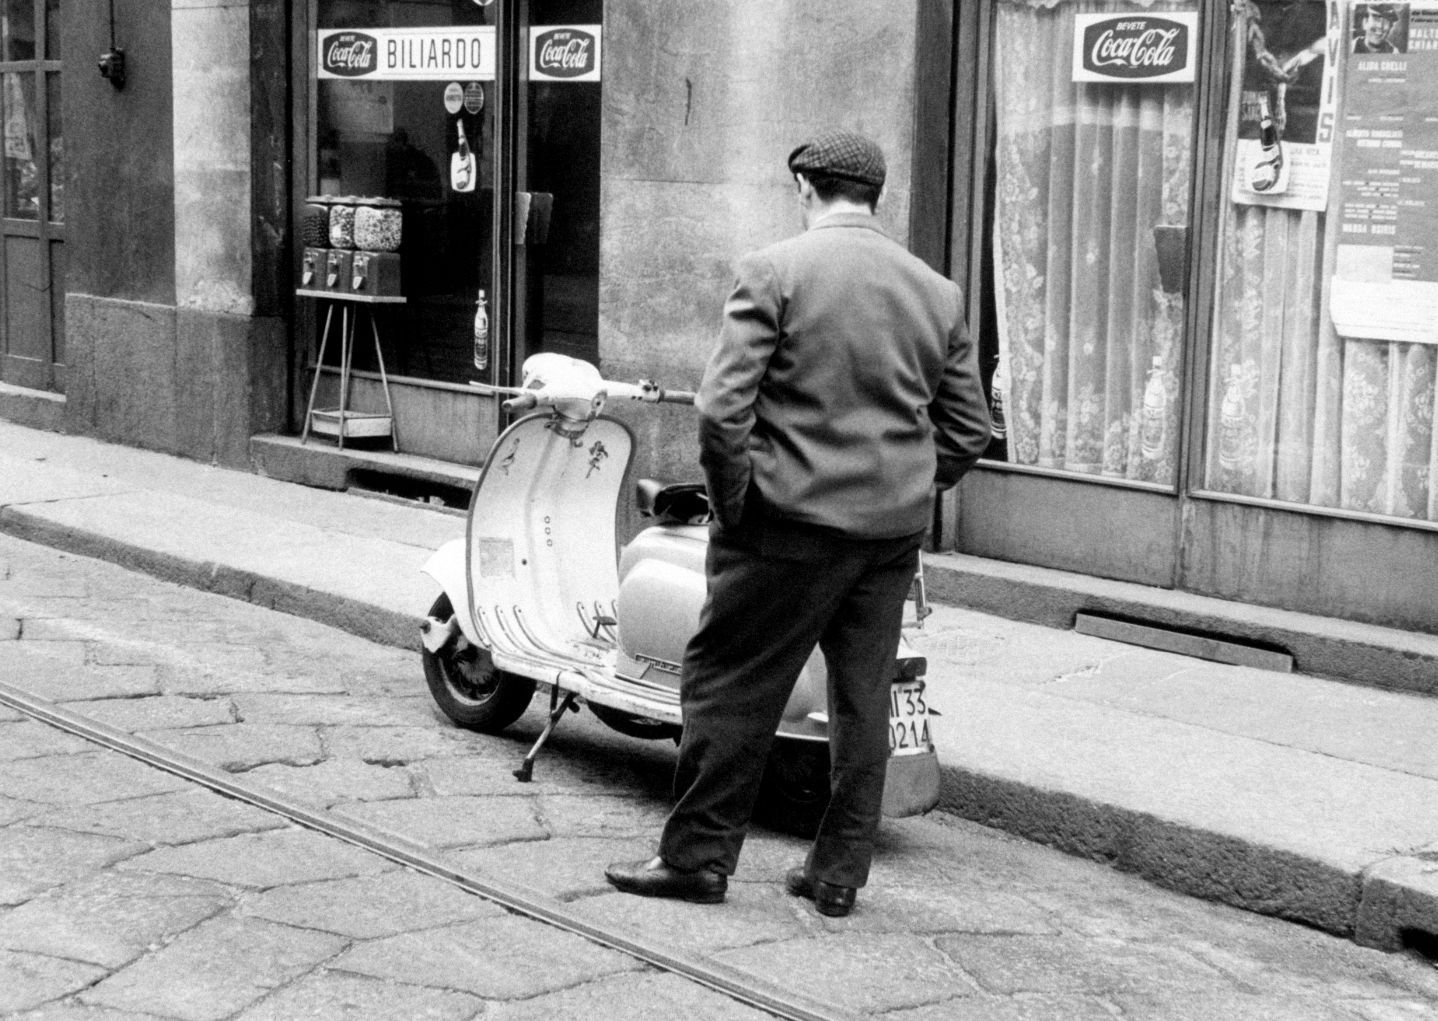 Un cadavere in redazione, la Milano degli anni Sessanta diventa noir - immagine 1